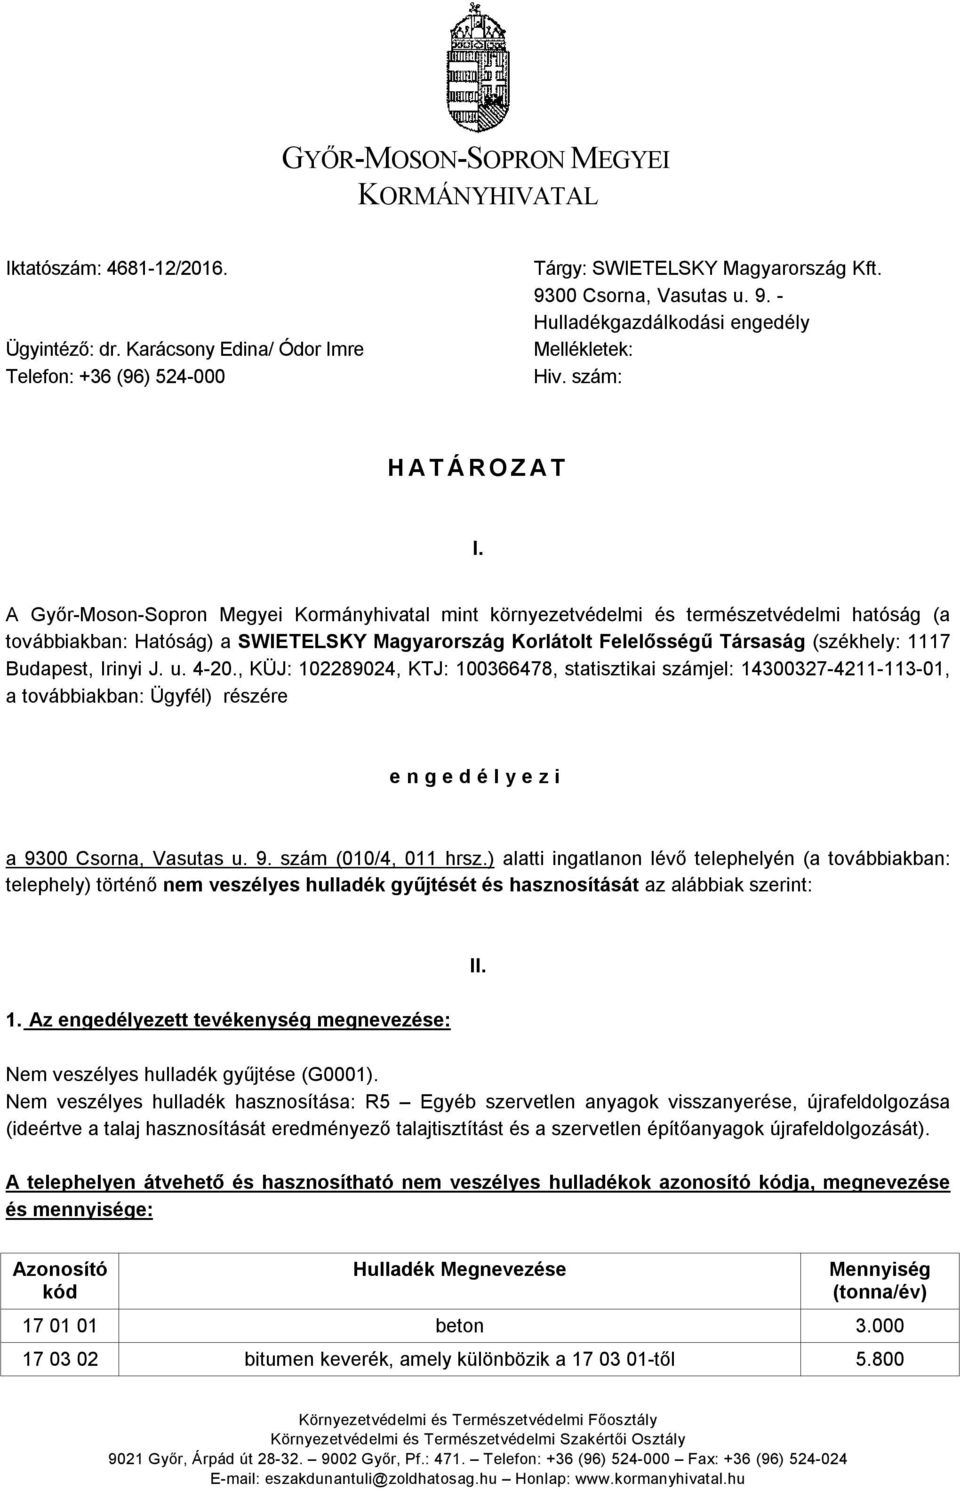 A Győr-Moson-Sopron Megyei Kormányhivatal mint környezetvédelmi és természetvédelmi hatóság (a továbbiakban: Hatóság) a SWIETELSKY Magyarország Korlátolt Felelősségű Társaság (székhely: 1117